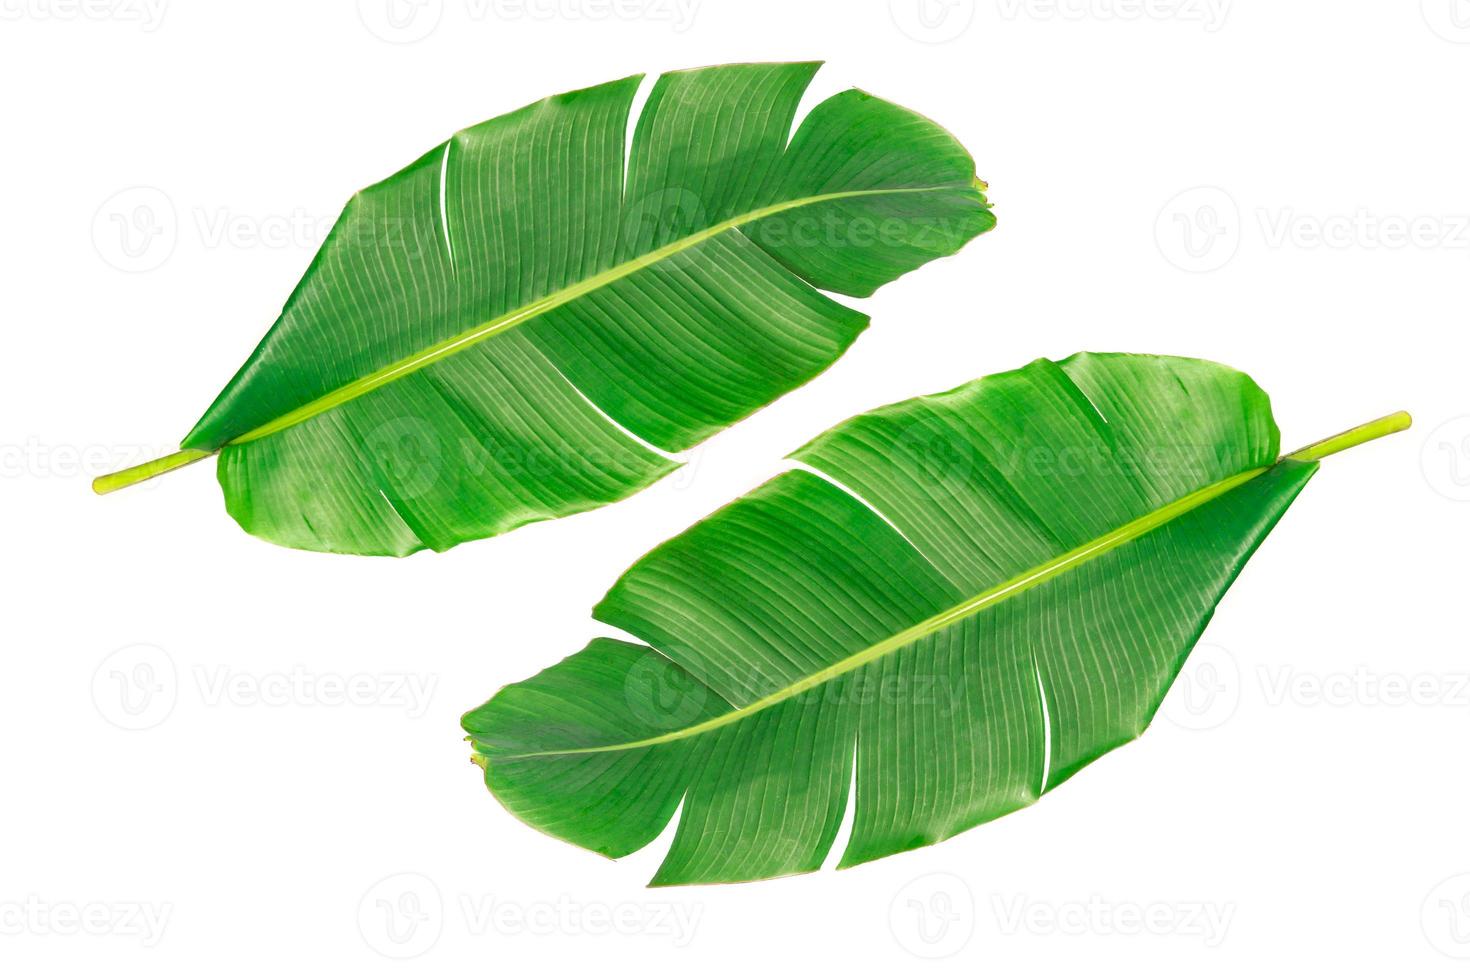 grote groene bananenbladeren van exotische palmboom op witte achtergrond. foto